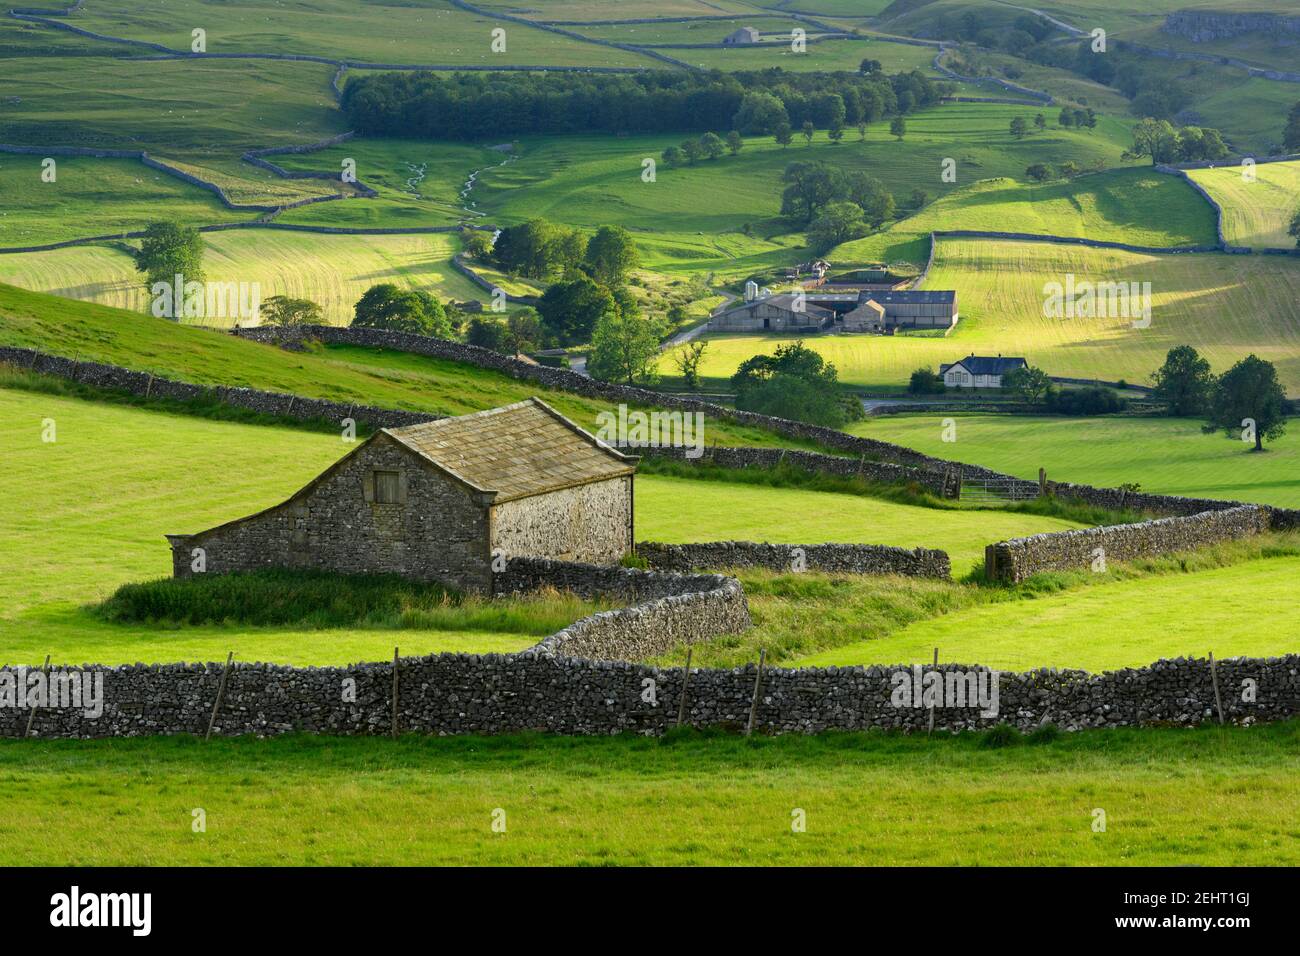 Paesaggistica campagna Wharfedale (valle, colline, fienile campo, muri a secco, verdi pascoli agricoli, Rolling Hills) - Yorkshire Dales, Inghilterra, Regno Unito. Foto Stock